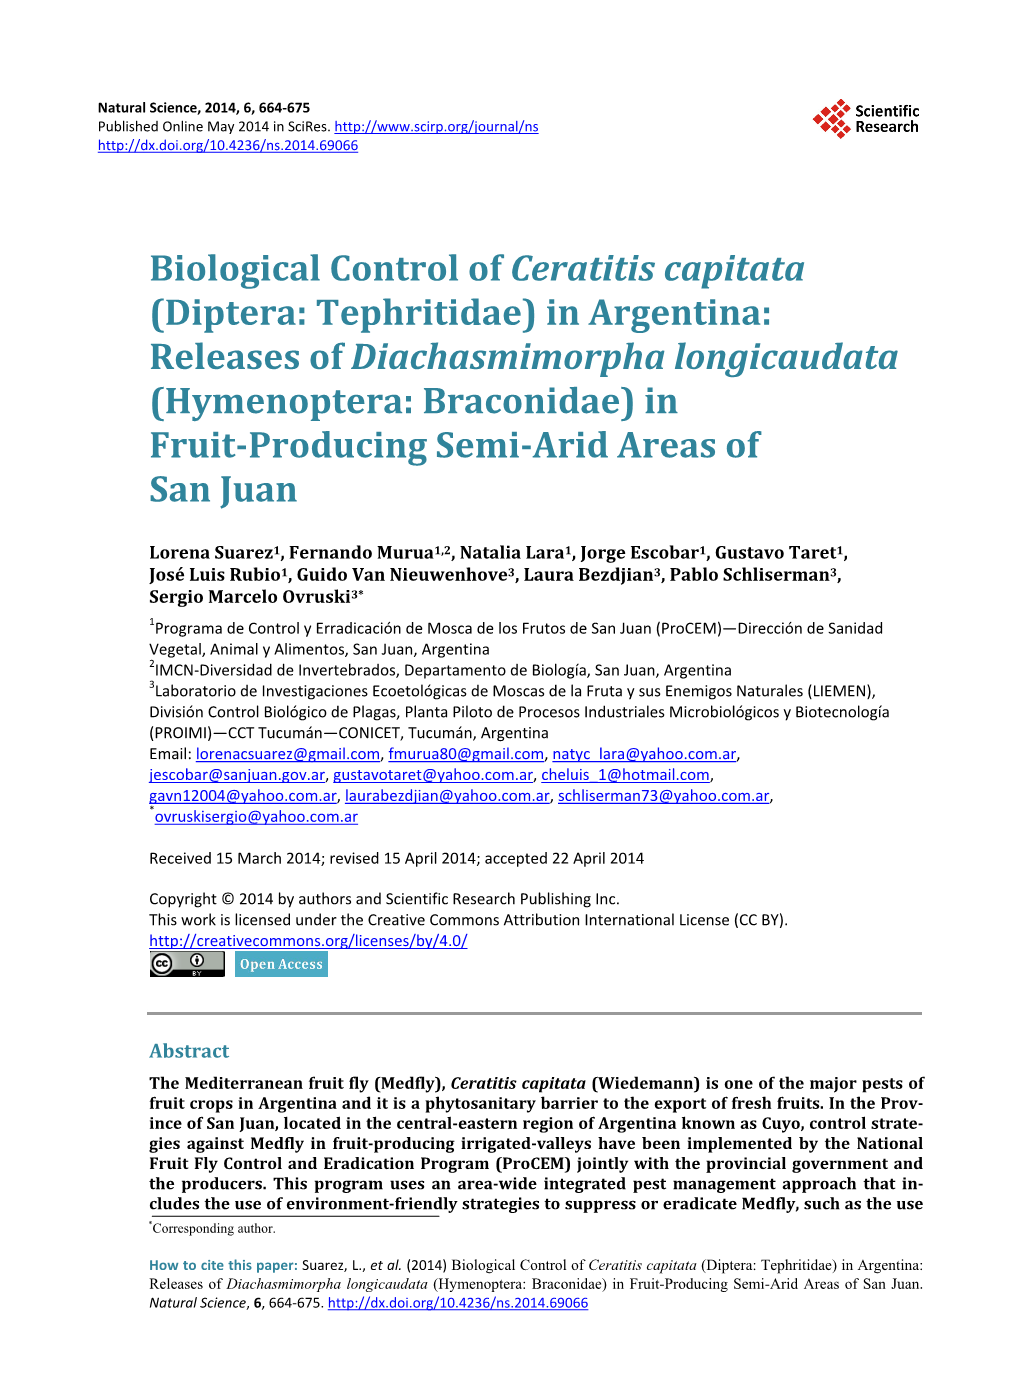 Biological Control of Ceratitis Capitata (Diptera: Tephritidae) in Argentina